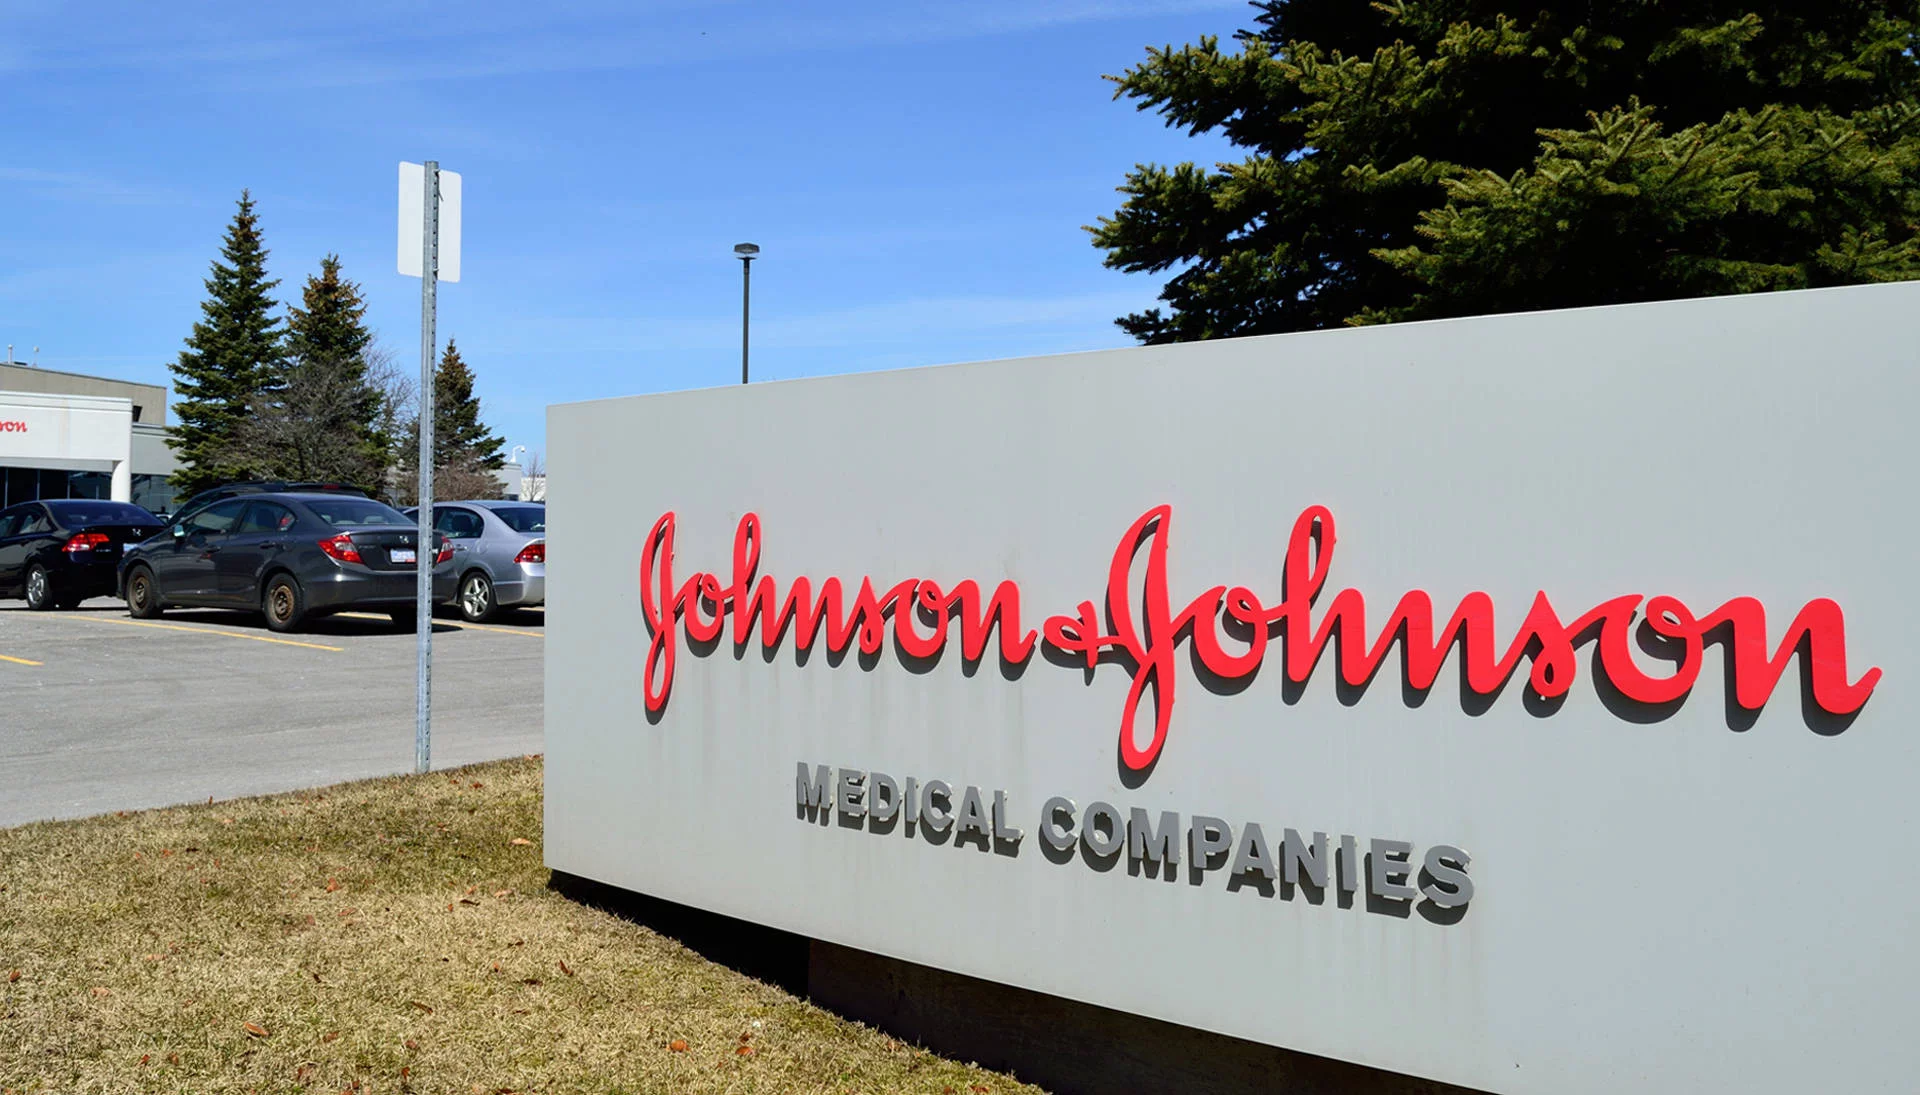 Johnson & Johnson accordo da 850 mln di dollari per acquistare Proteologix